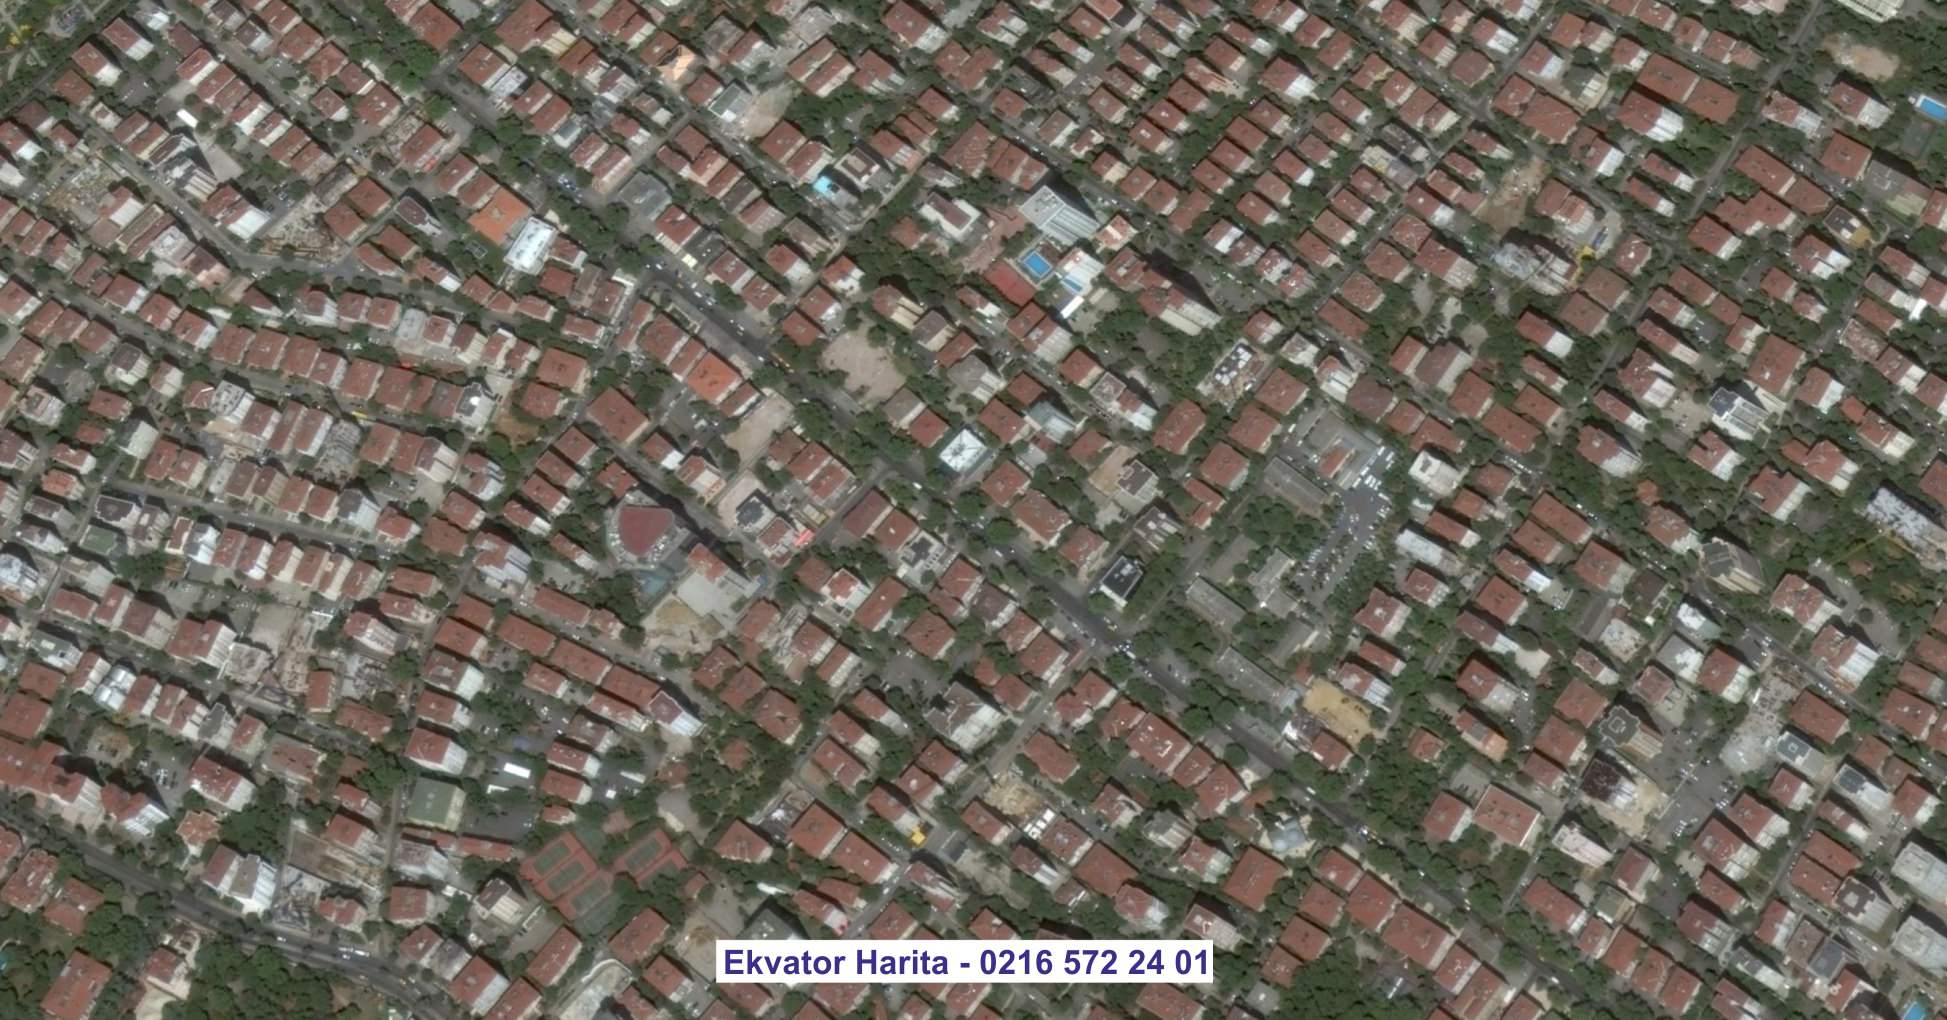 Şam Uydu Görüntüsü Örnek Fotoğrafı